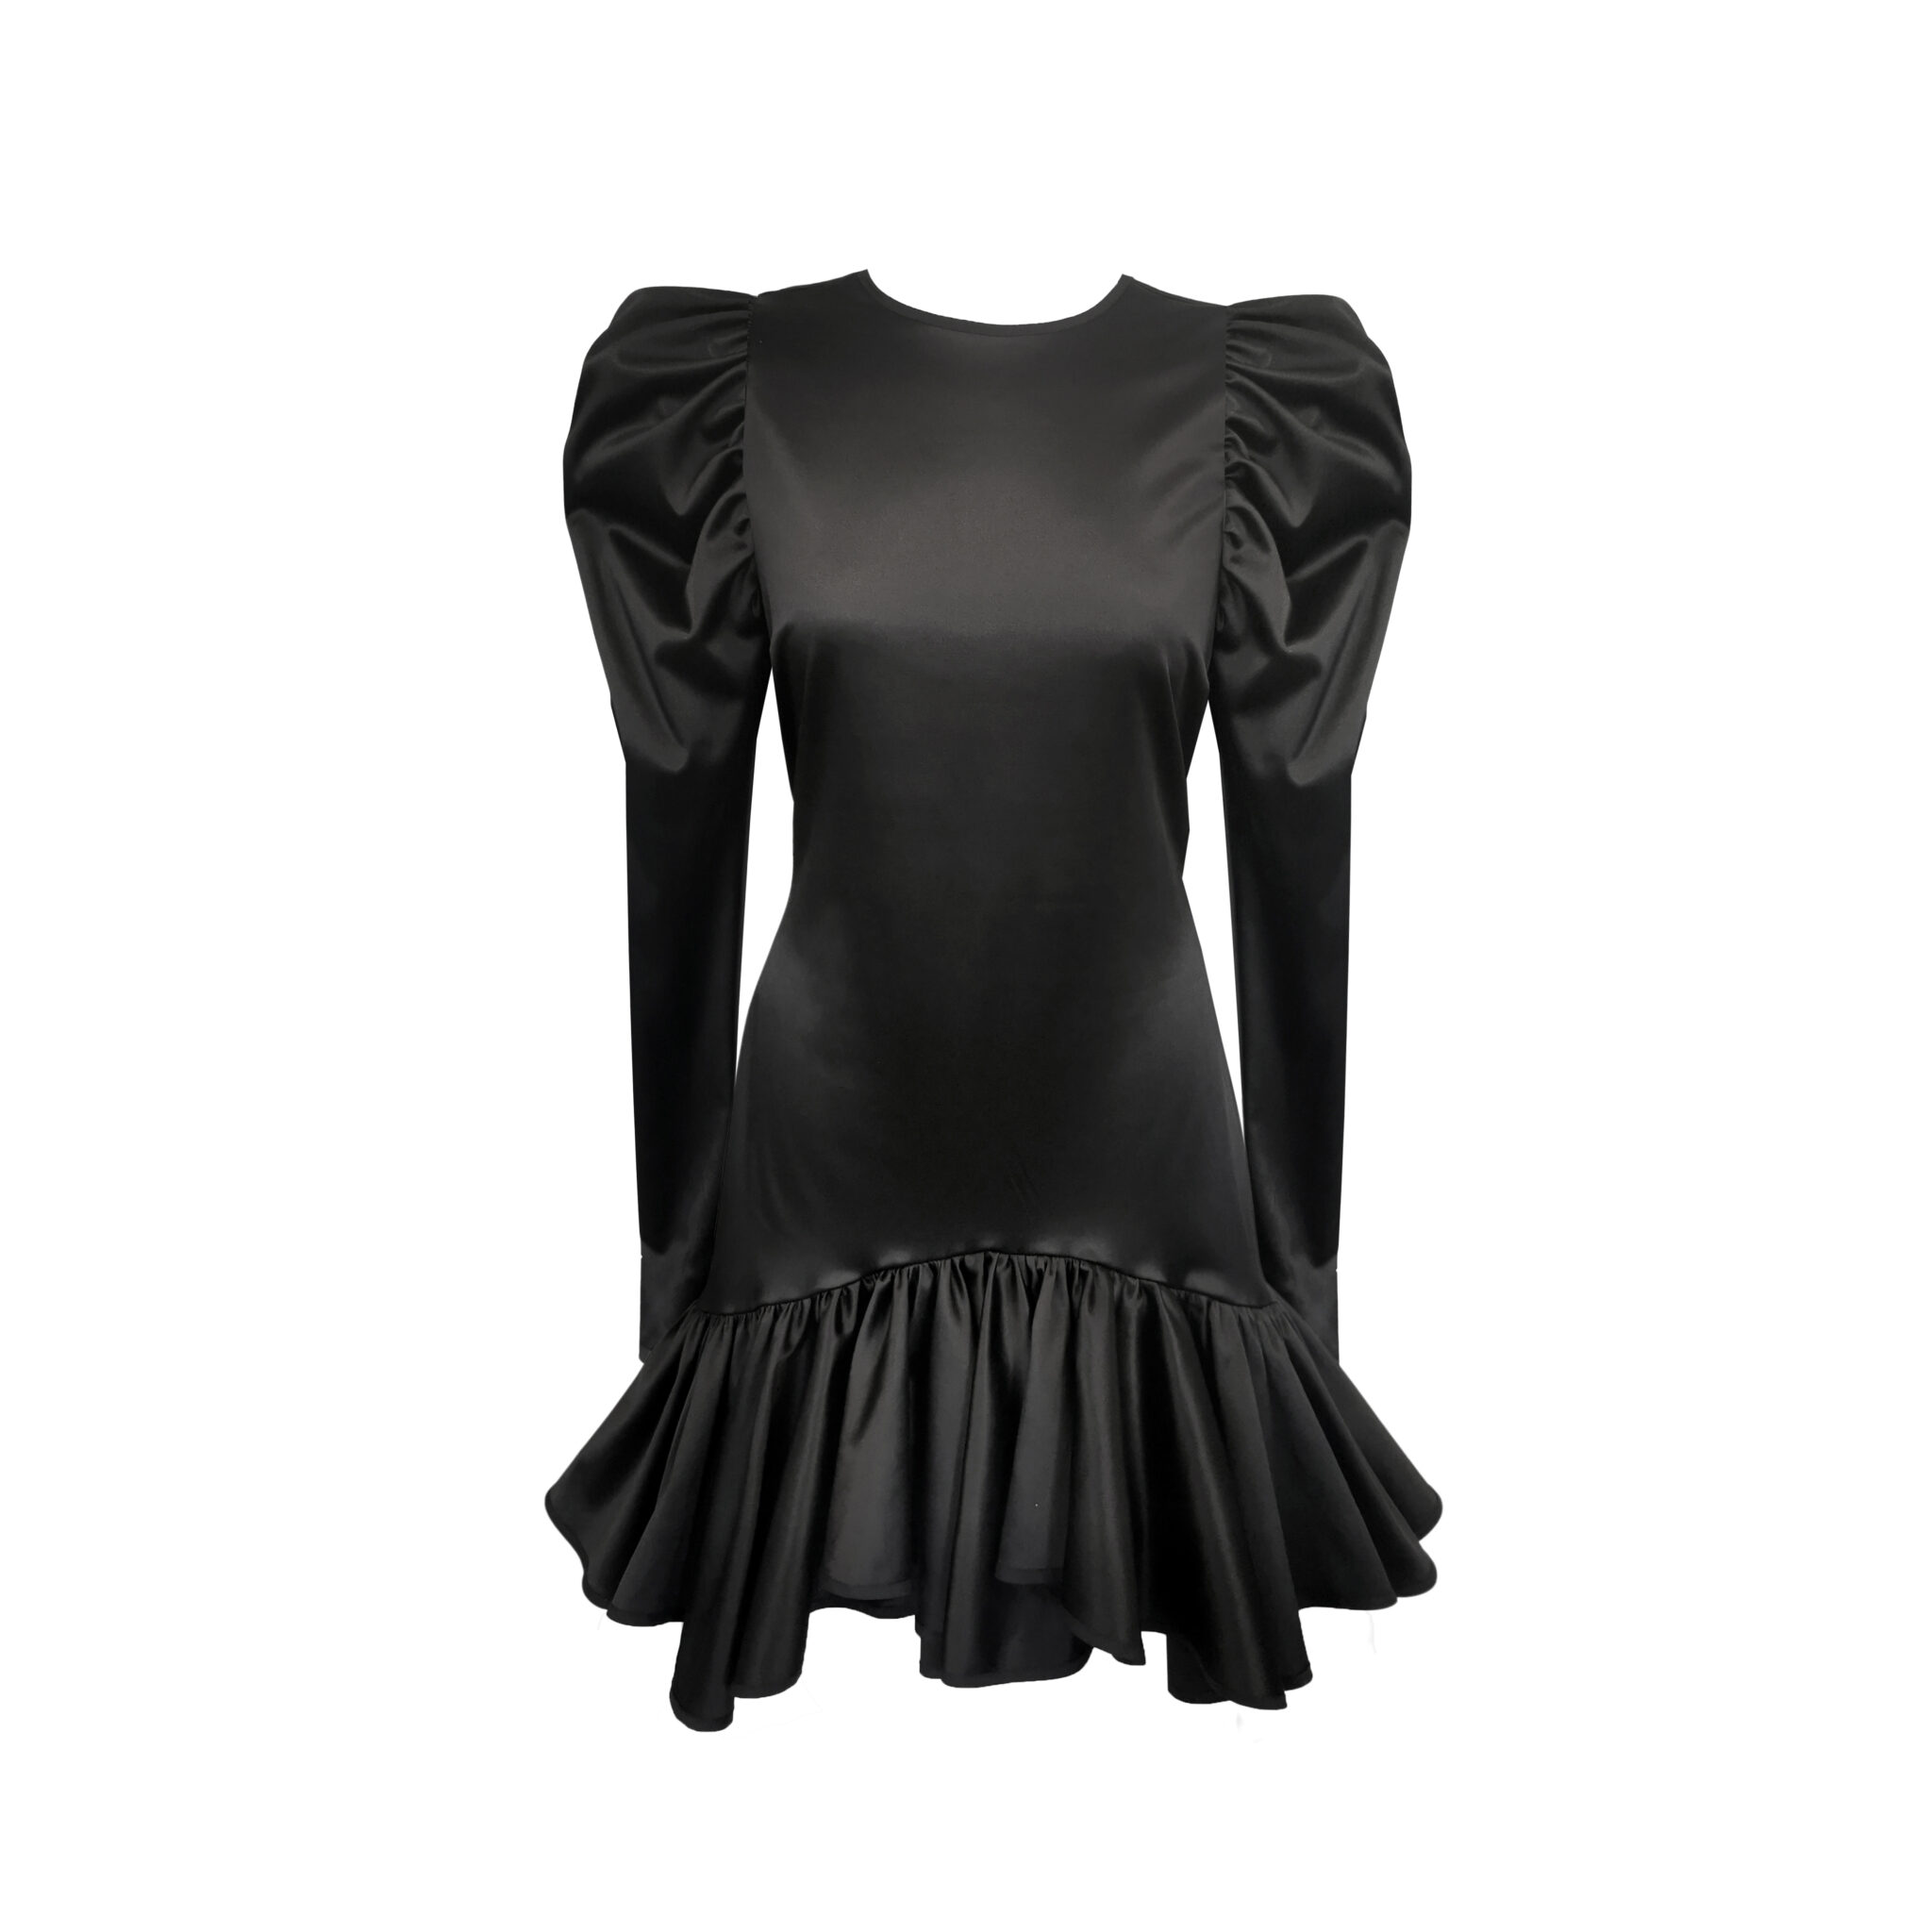 Black satin dress – Boudoir